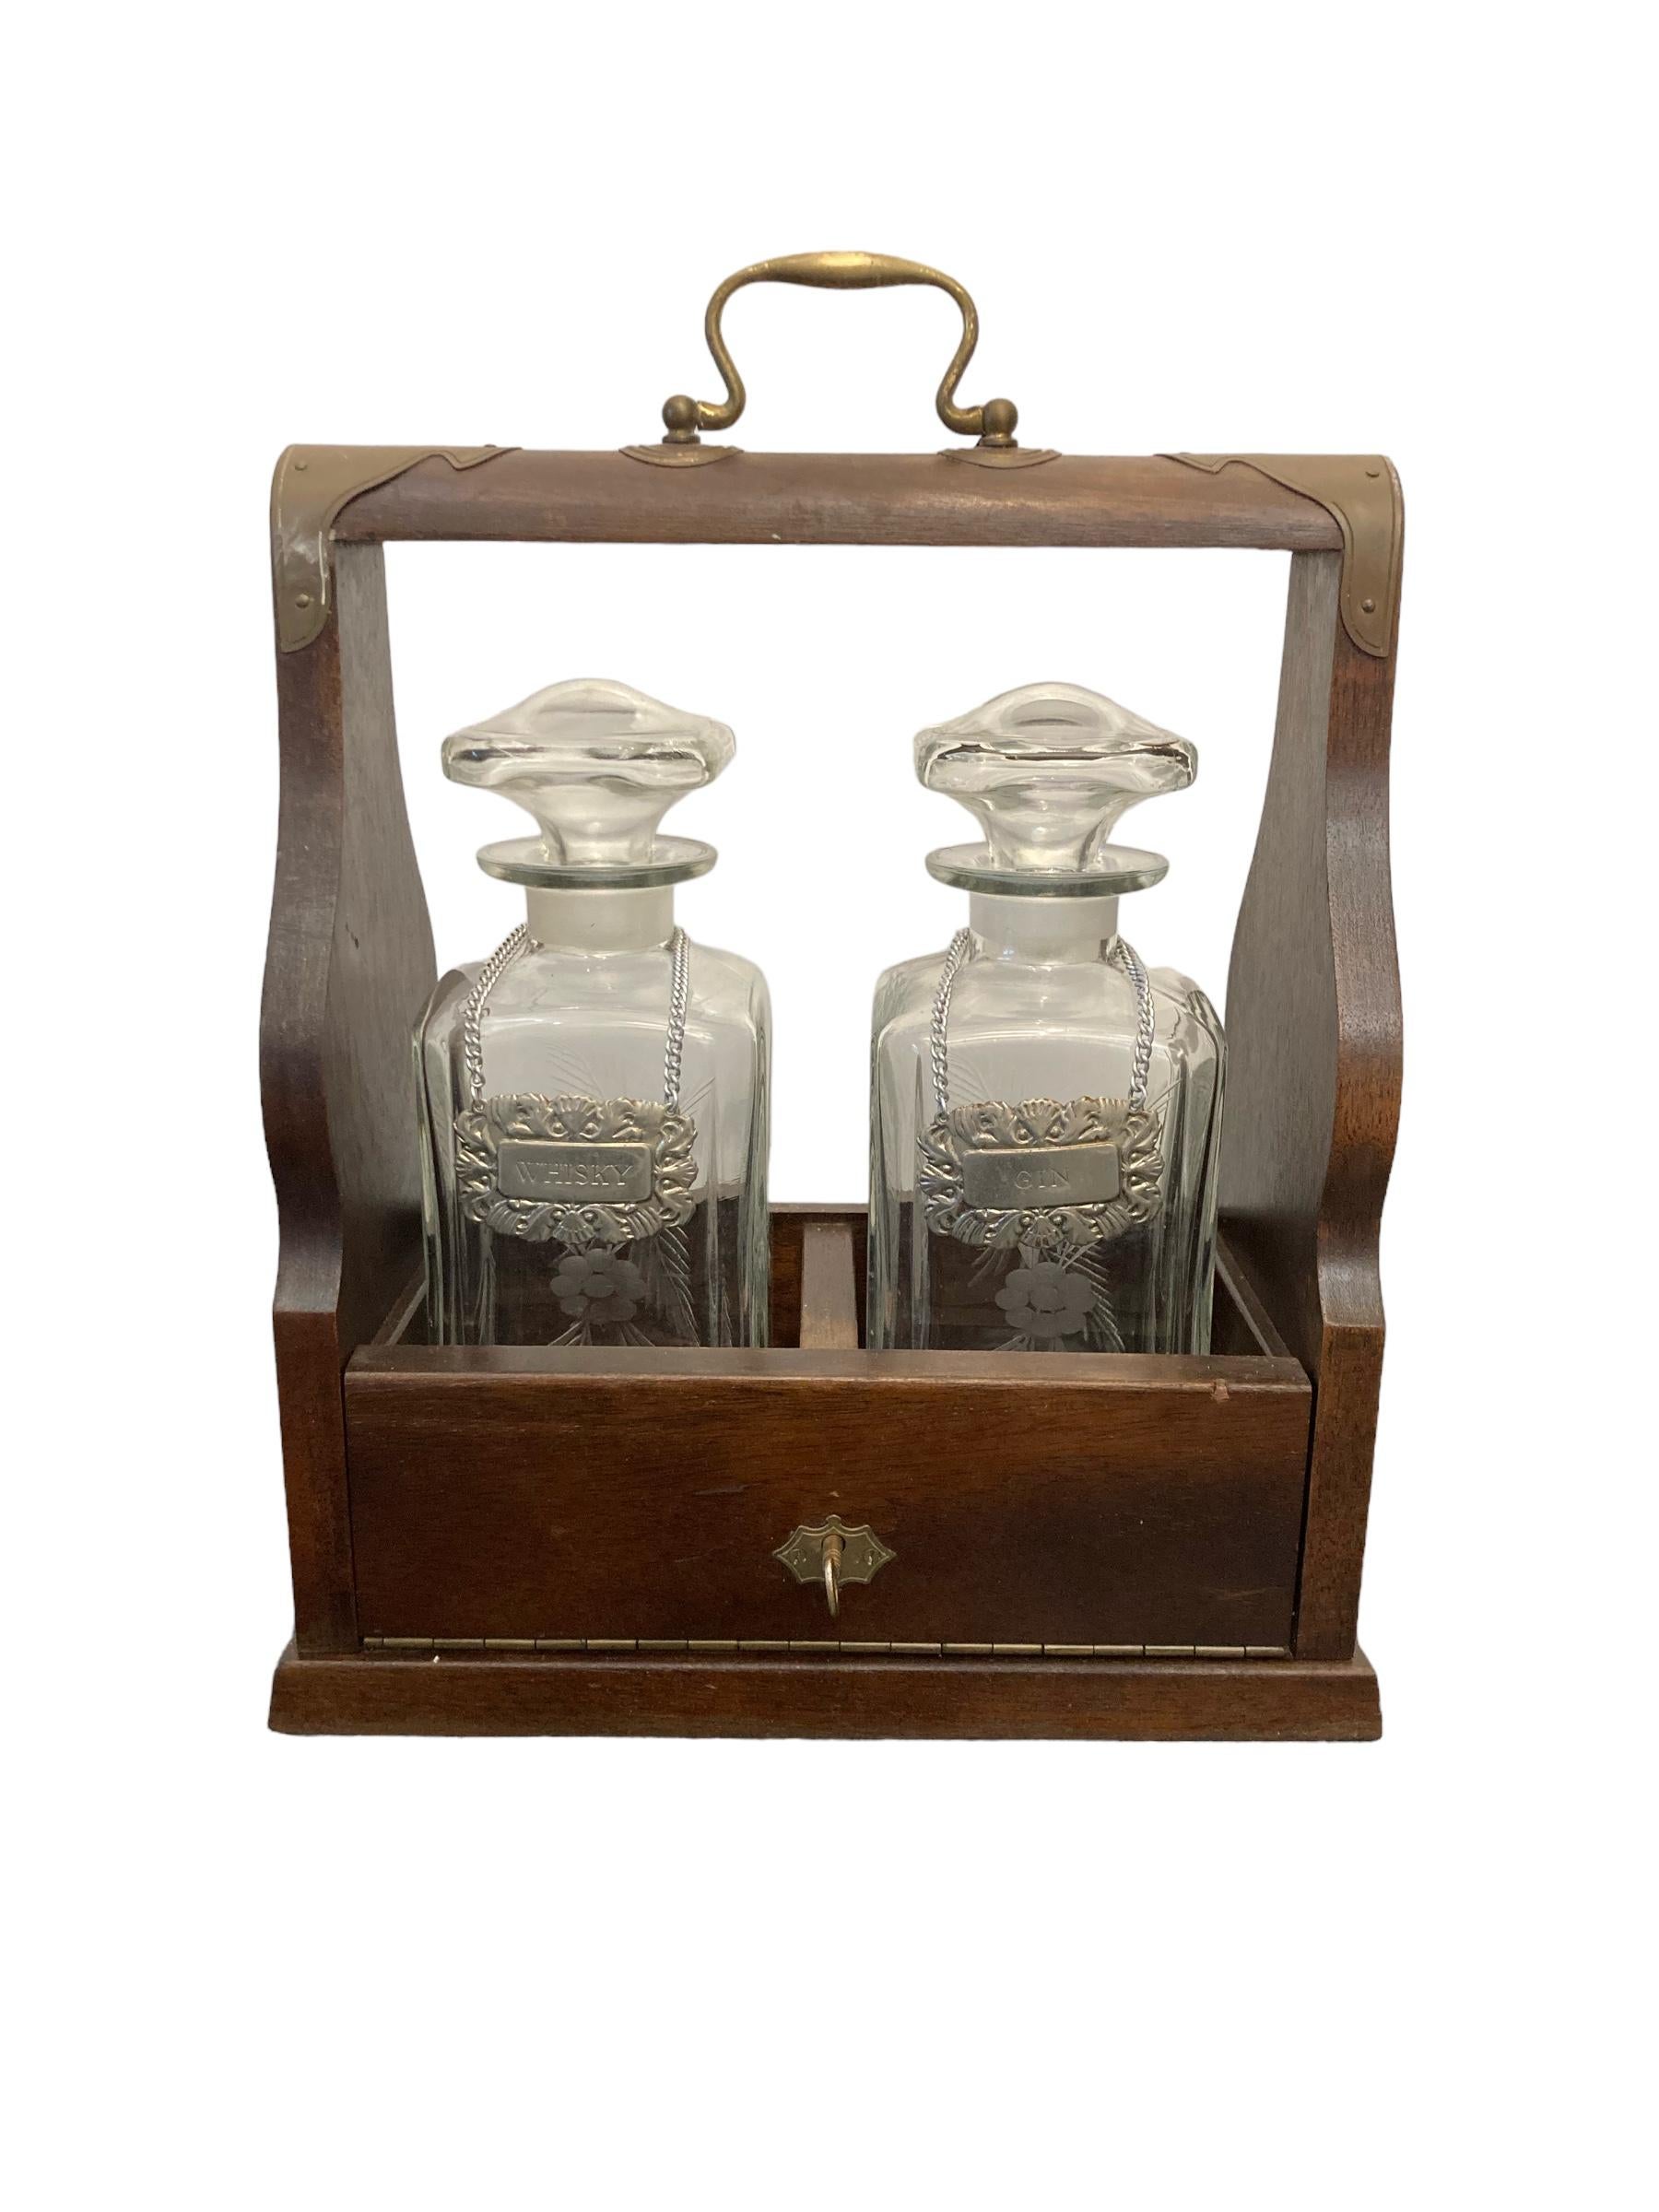 Victorian 2 Dekanter Tantalus mit Schlüssel Messing Griff Mahagoni Fall versilbert Whiskey und Gin Etiketten auf Kette. Guter Zustand.
H: 32cm B: 27 cm T: 14cm